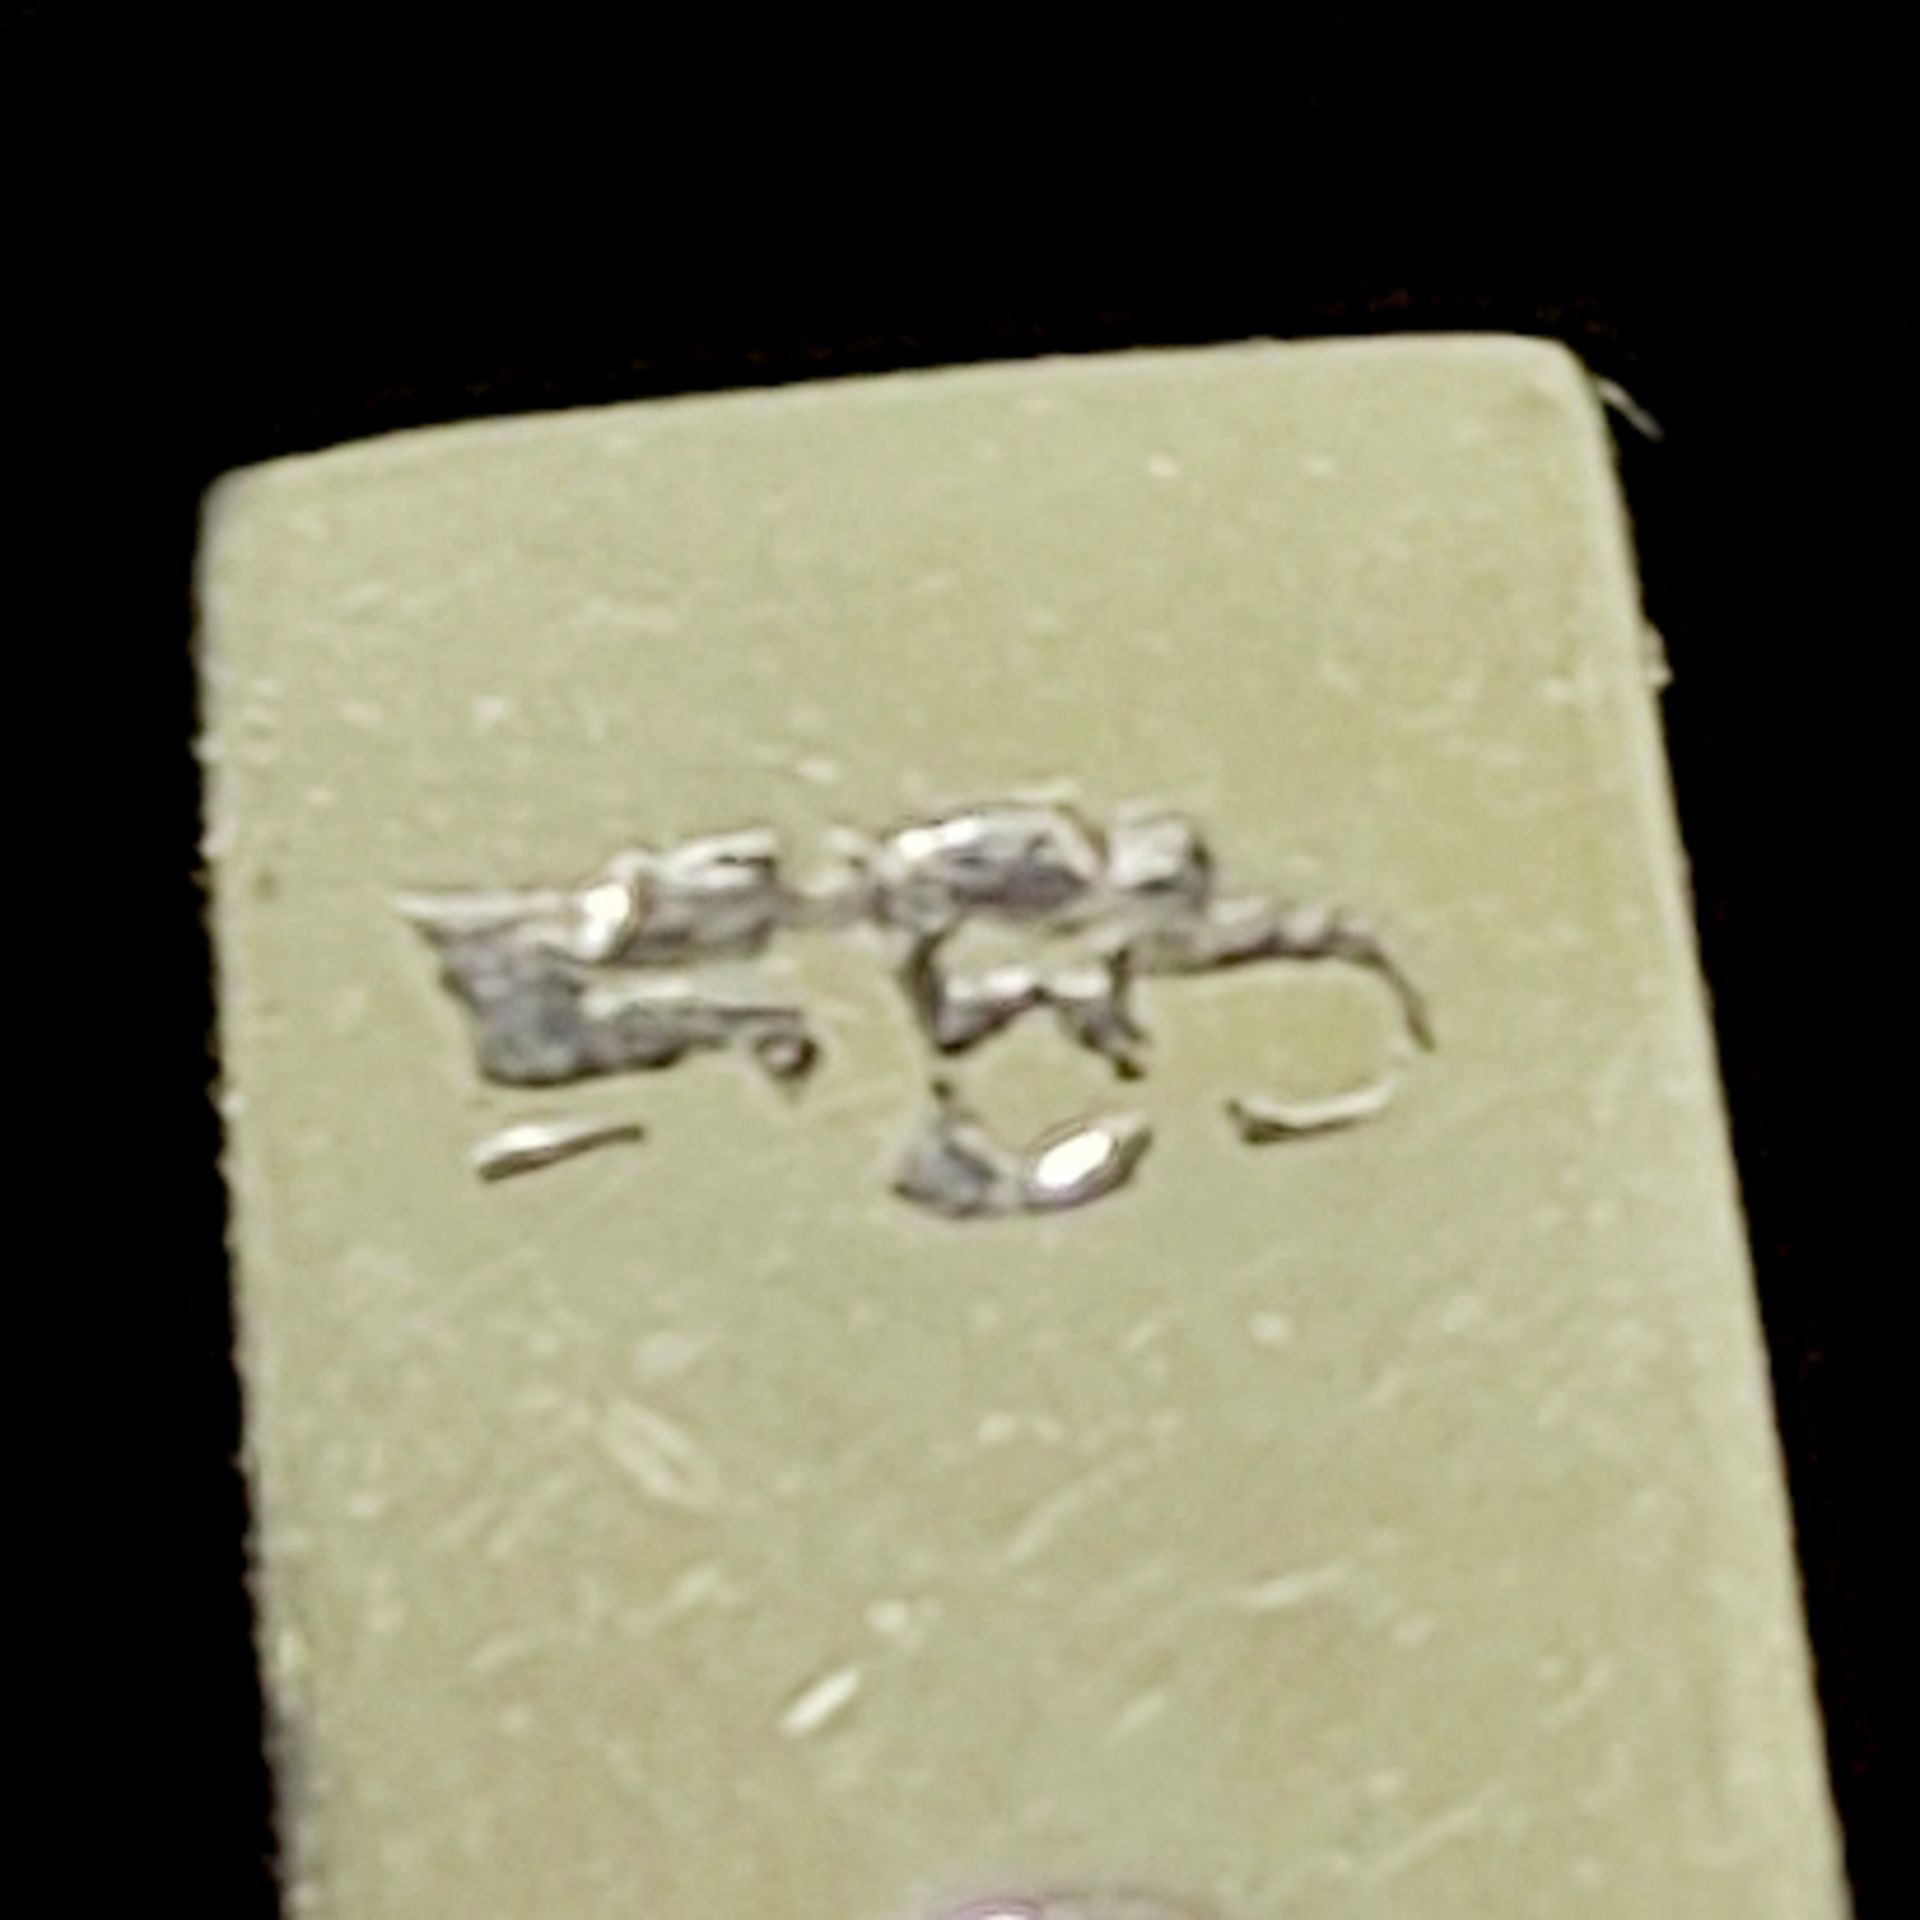 Perlen-Diamant-Armband, 585/14K Weißgold (punziert), 13,85g, schauseitig vegetabiles, durchbrochen  - Bild 3 aus 3